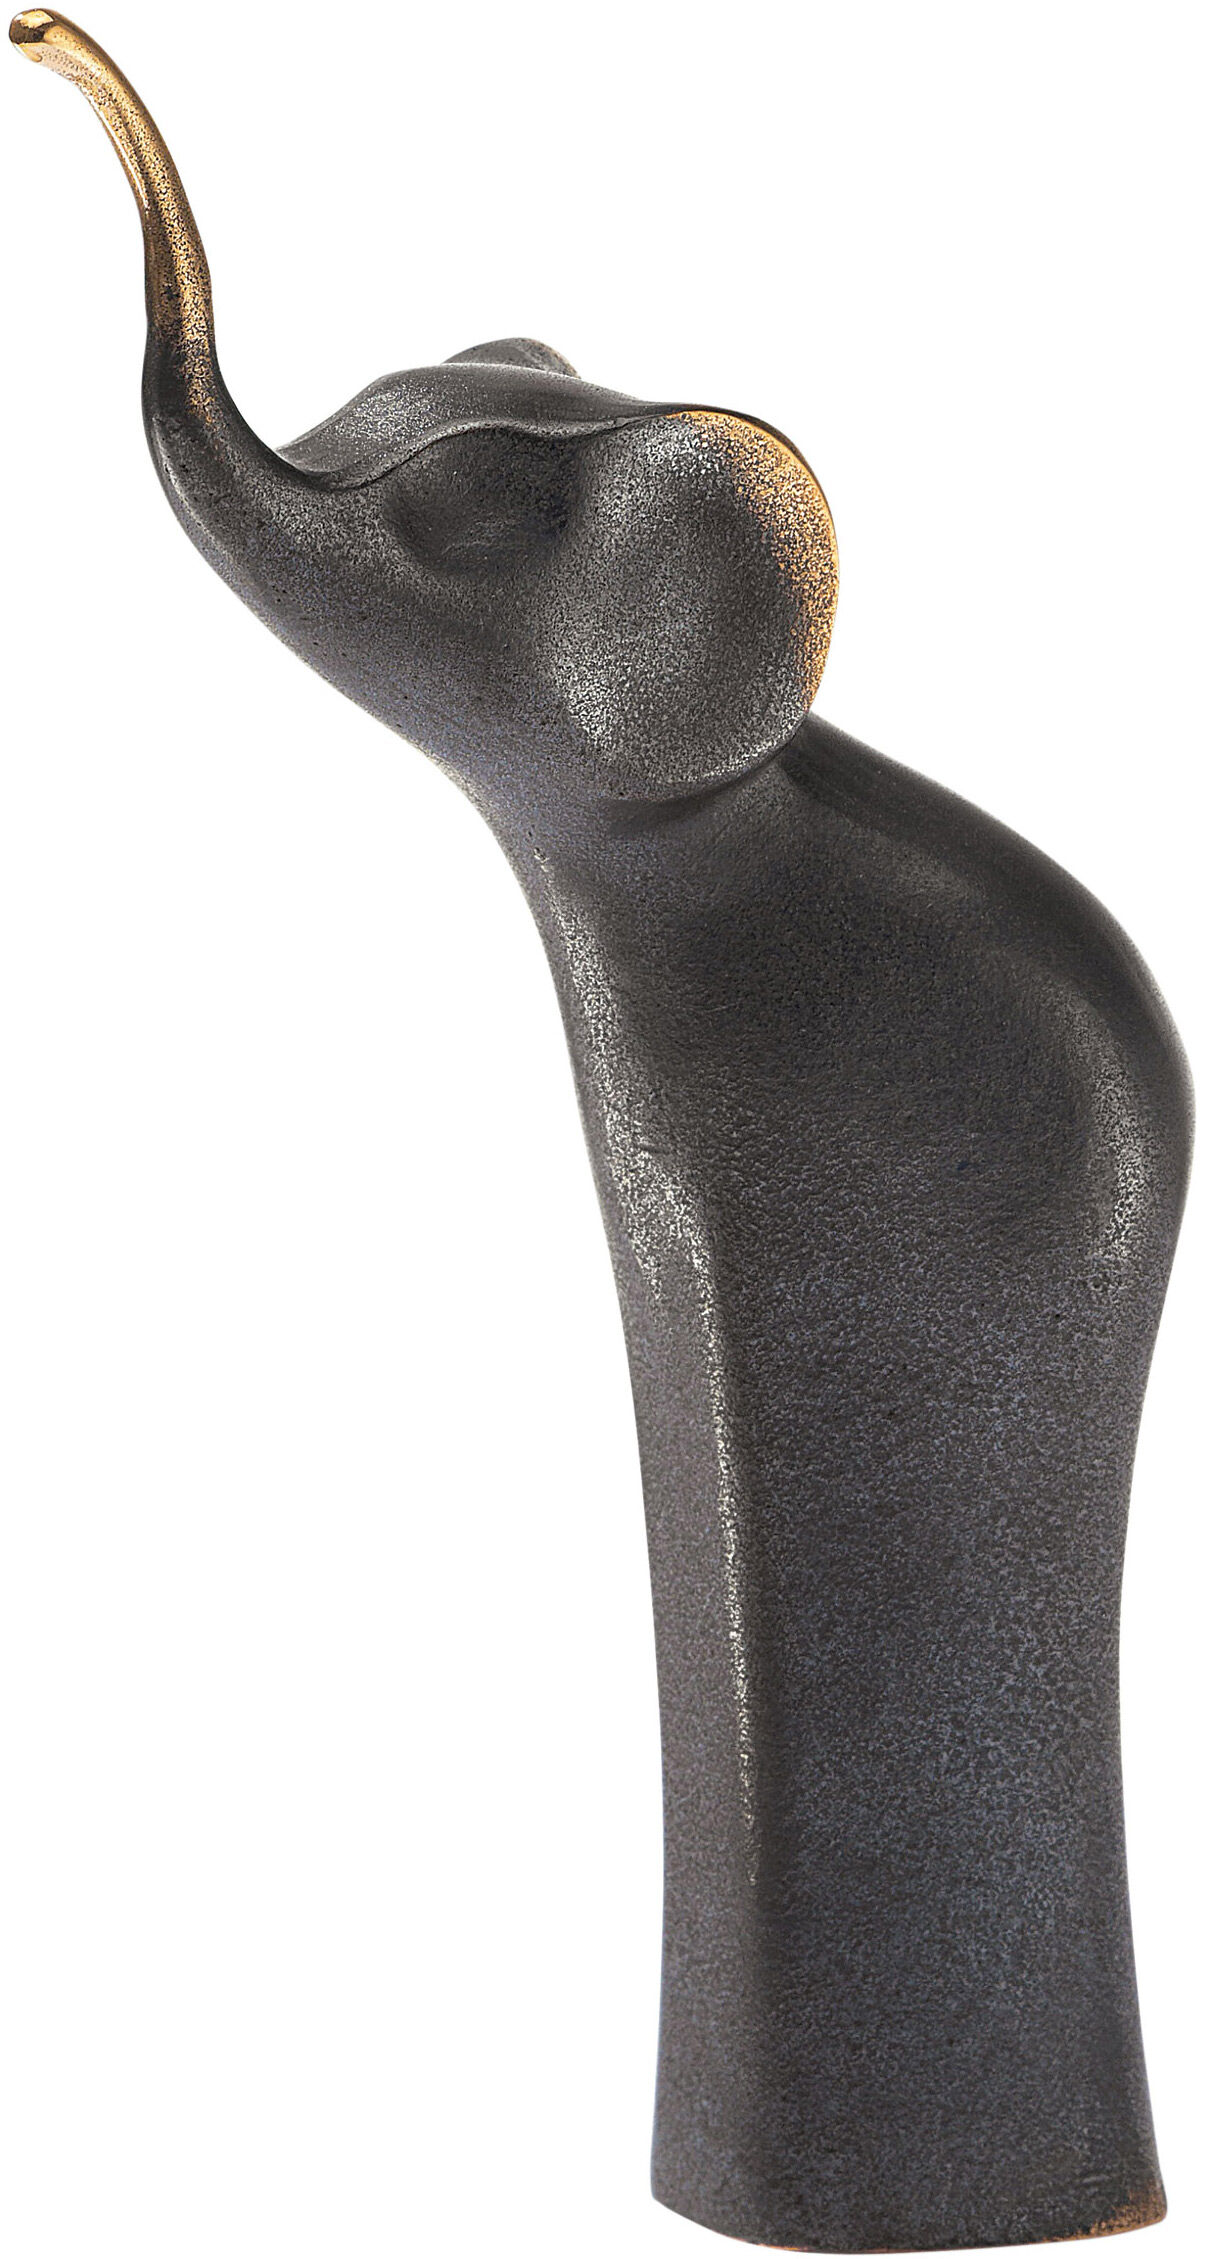 Dier sculptuur "Olifant", brons von Kerstin Stark